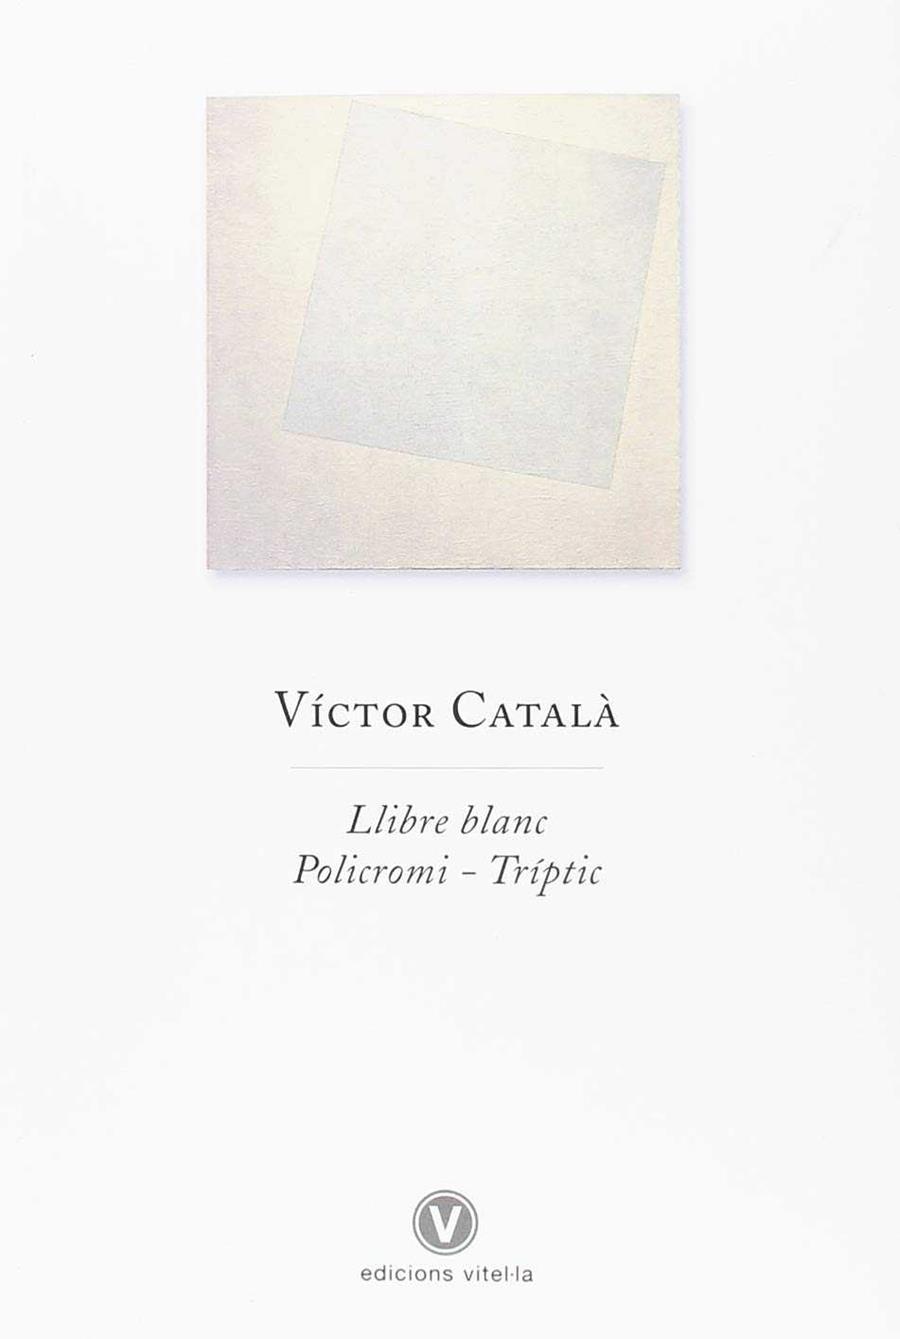 Llibre blanc | Víctor Català | Cooperativa autogestionària